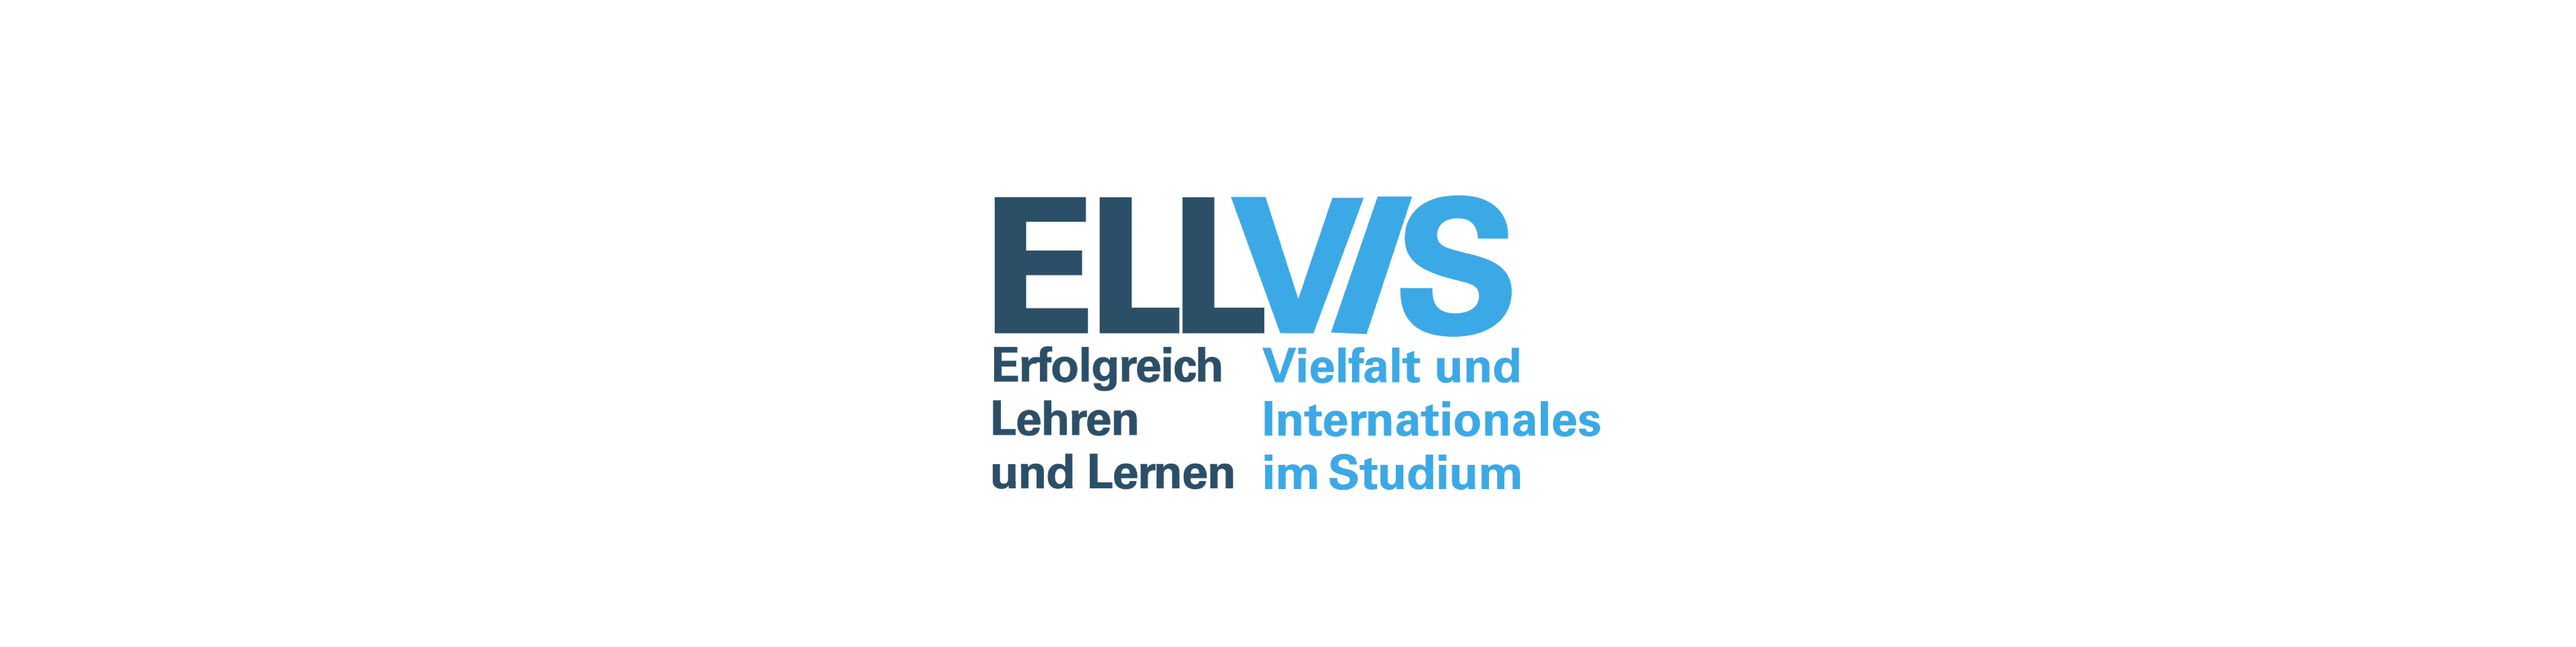 ELLVIS: Erfolgreich Lehren und Lernen – Vielfalt und Internationales im Studium